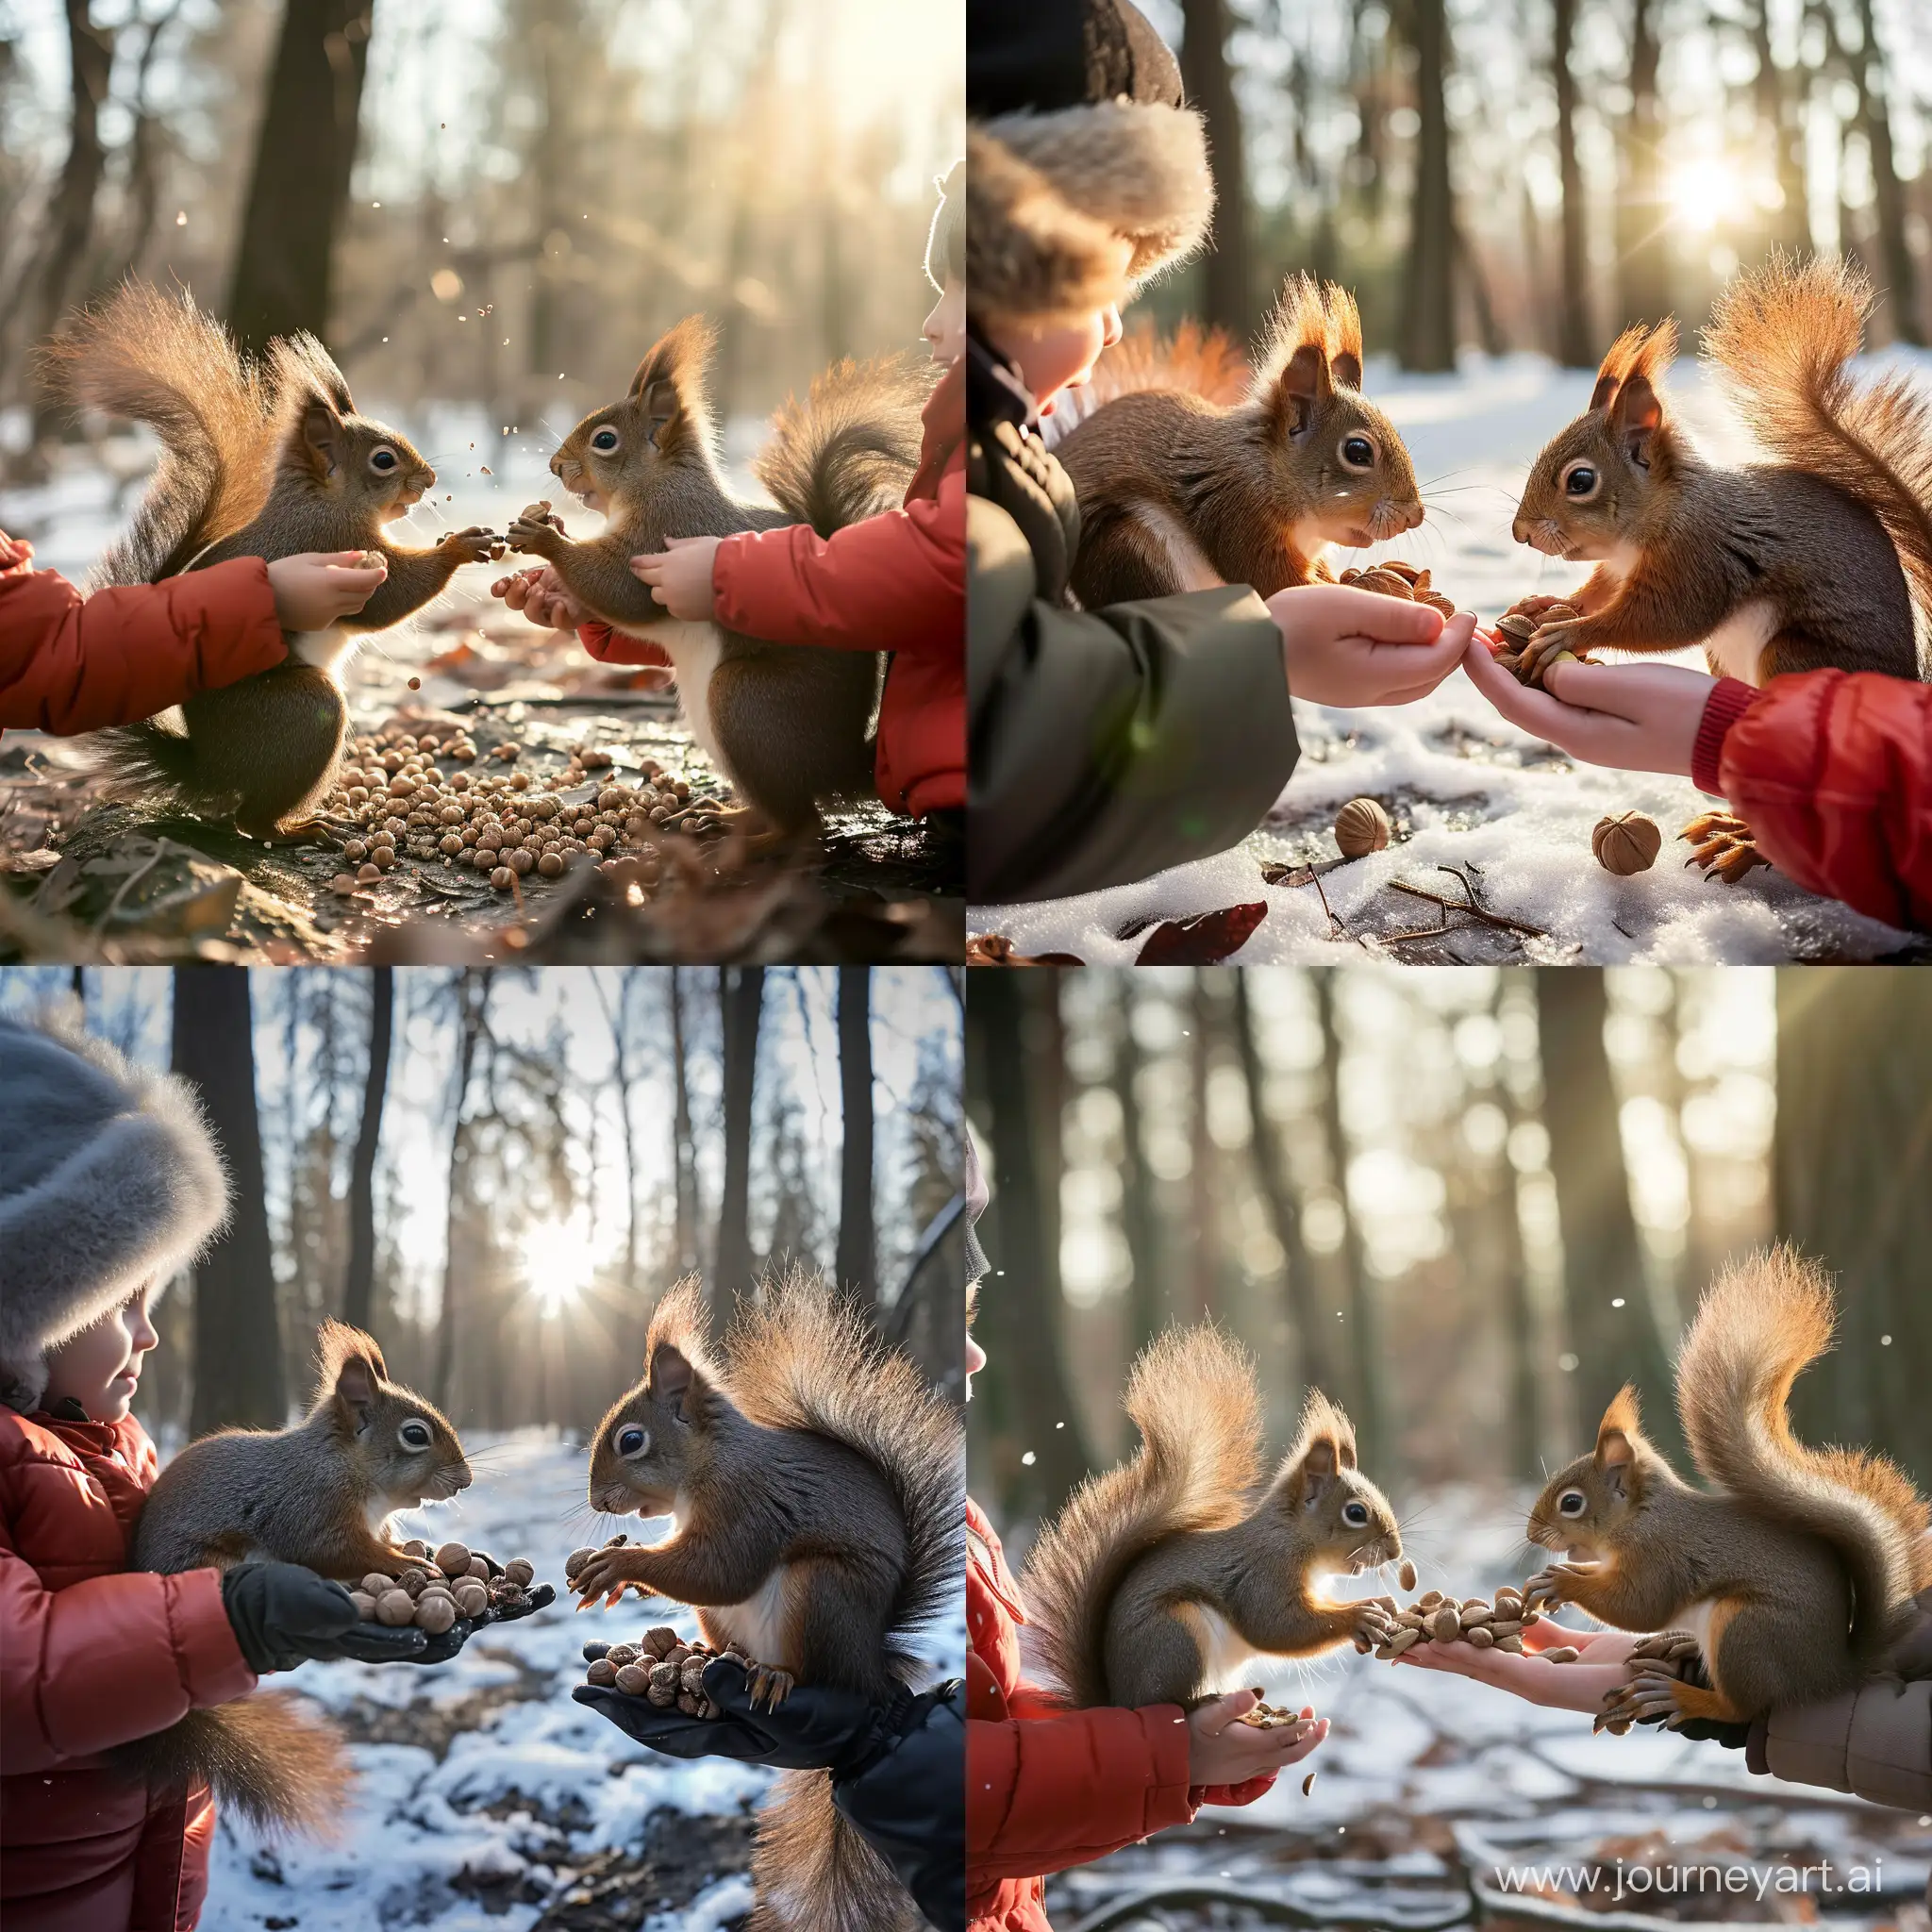 Дети кормят белок орешками с руки, зимний солнечный лес, фотография, гиперреализм, высокое разрешение